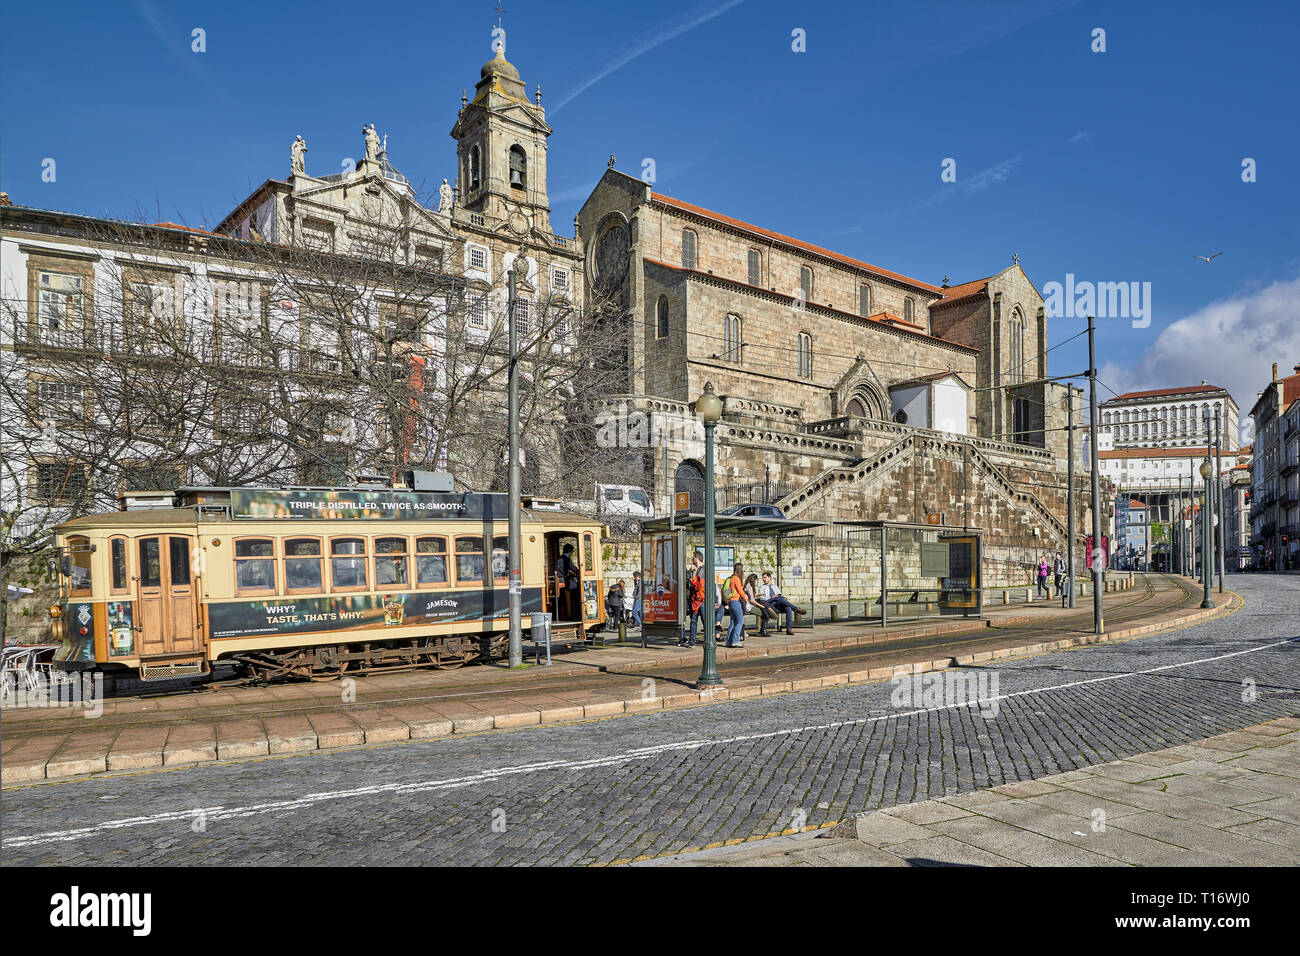 Église du couvent de San Francisco. Architecture gothique et baroque du 14e siècle à Porto, Portugal. Banque D'Images